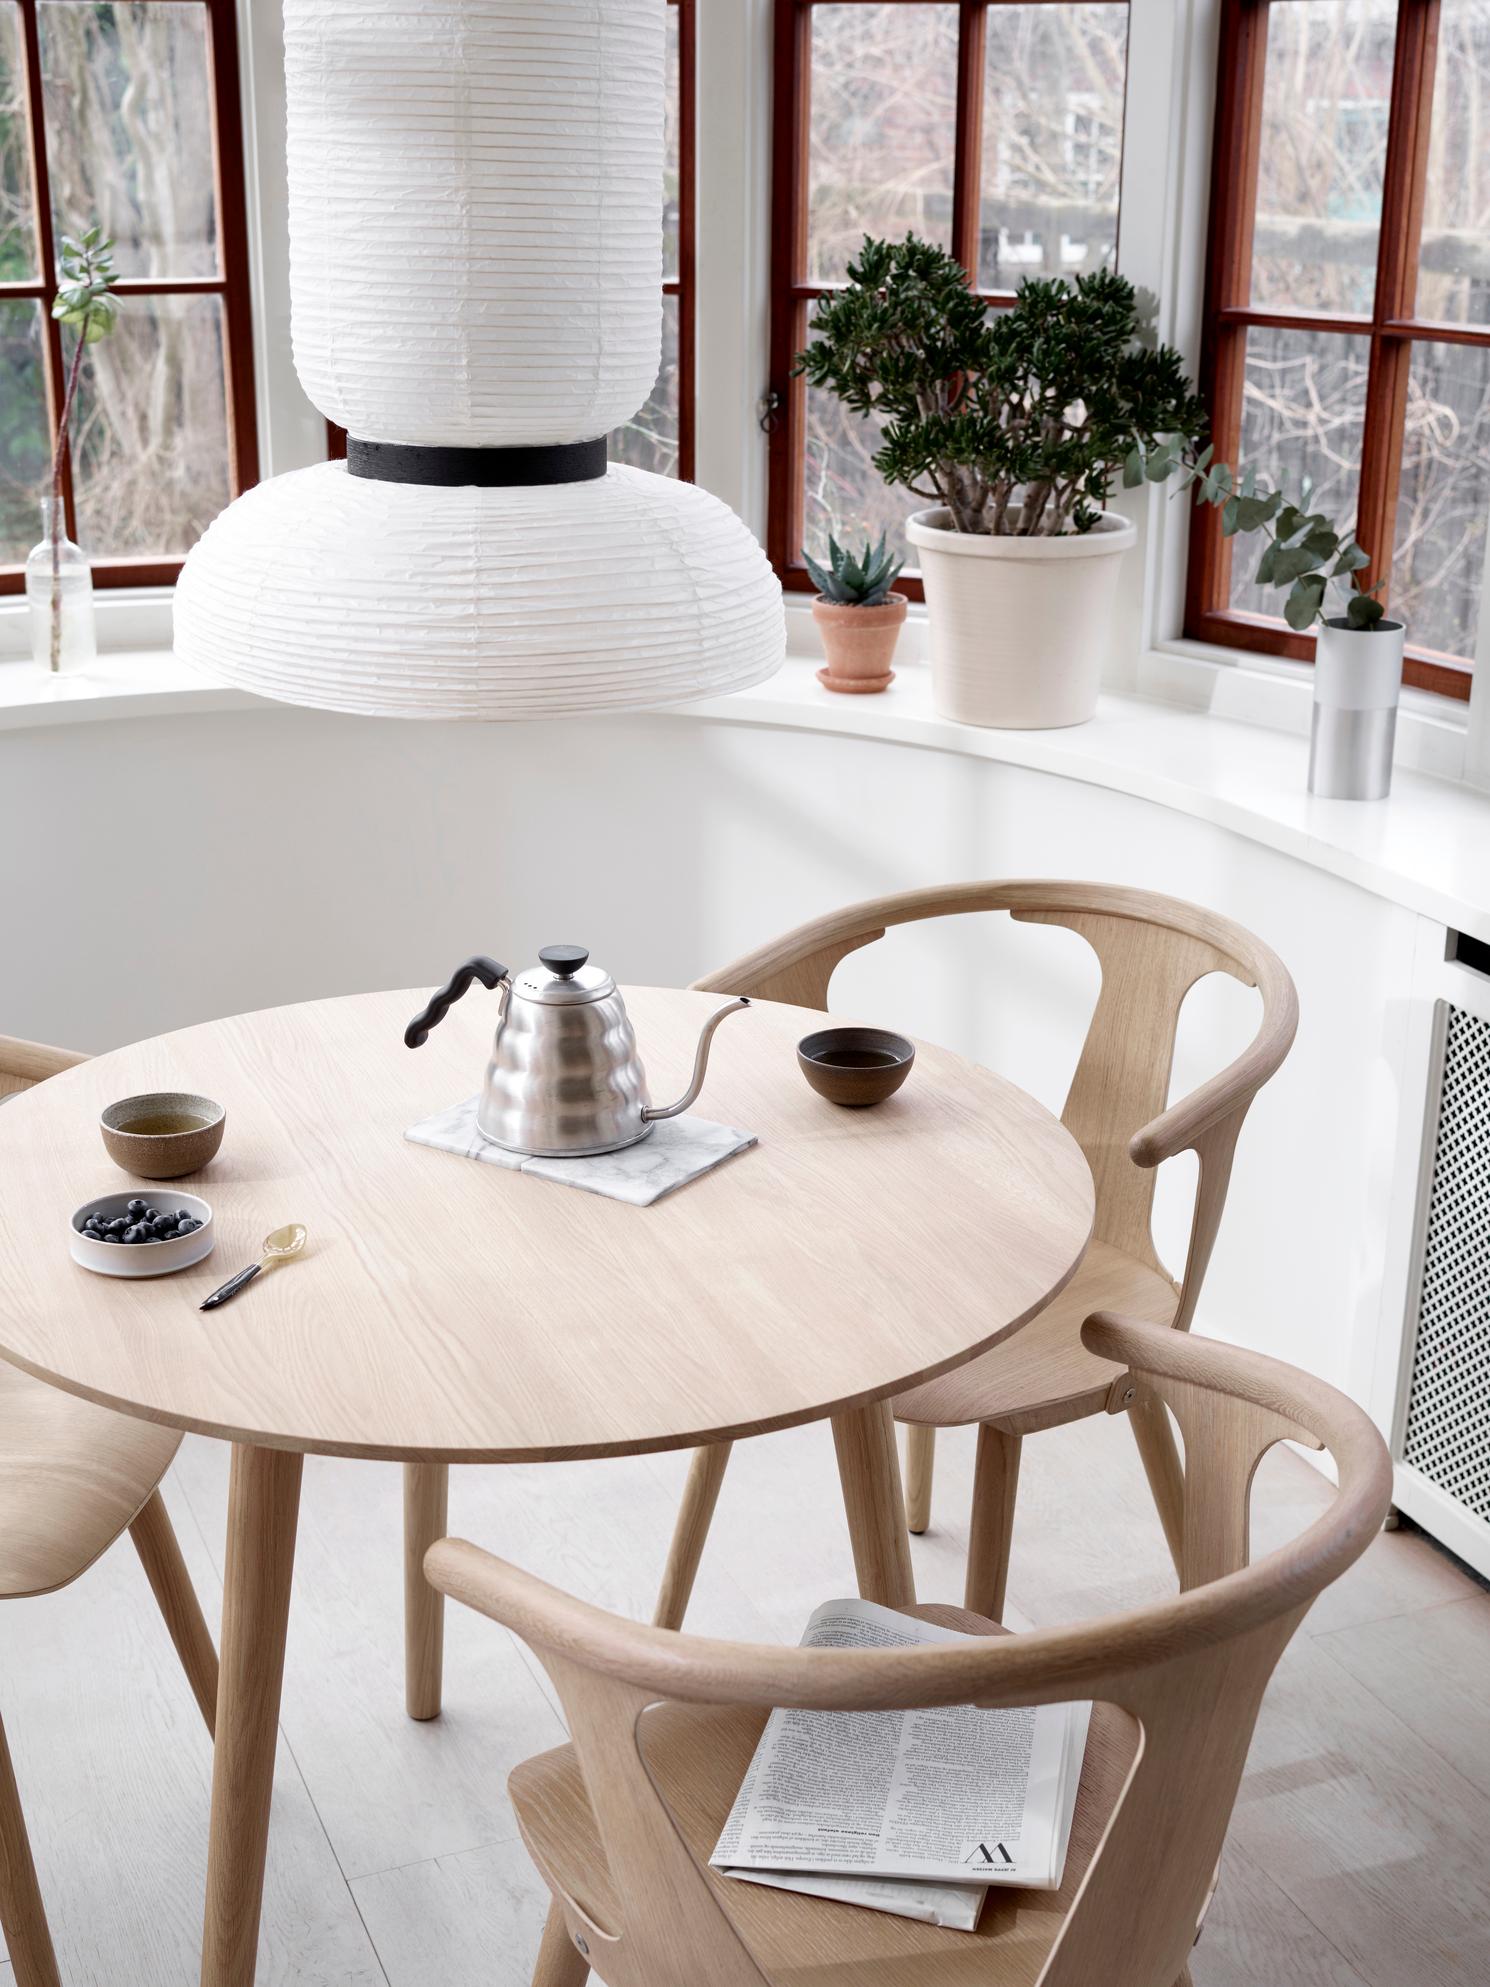 Inspiriert vom skandinavischen Erbe des Designs und des Möbelhandwerks, ist In Between das Ergebnis von Sami Kallios soliden Kenntnissen traditioneller Holzbearbeitungstechniken und seinem Auge für raffinierte Details.
Es begann mit einem einzigen